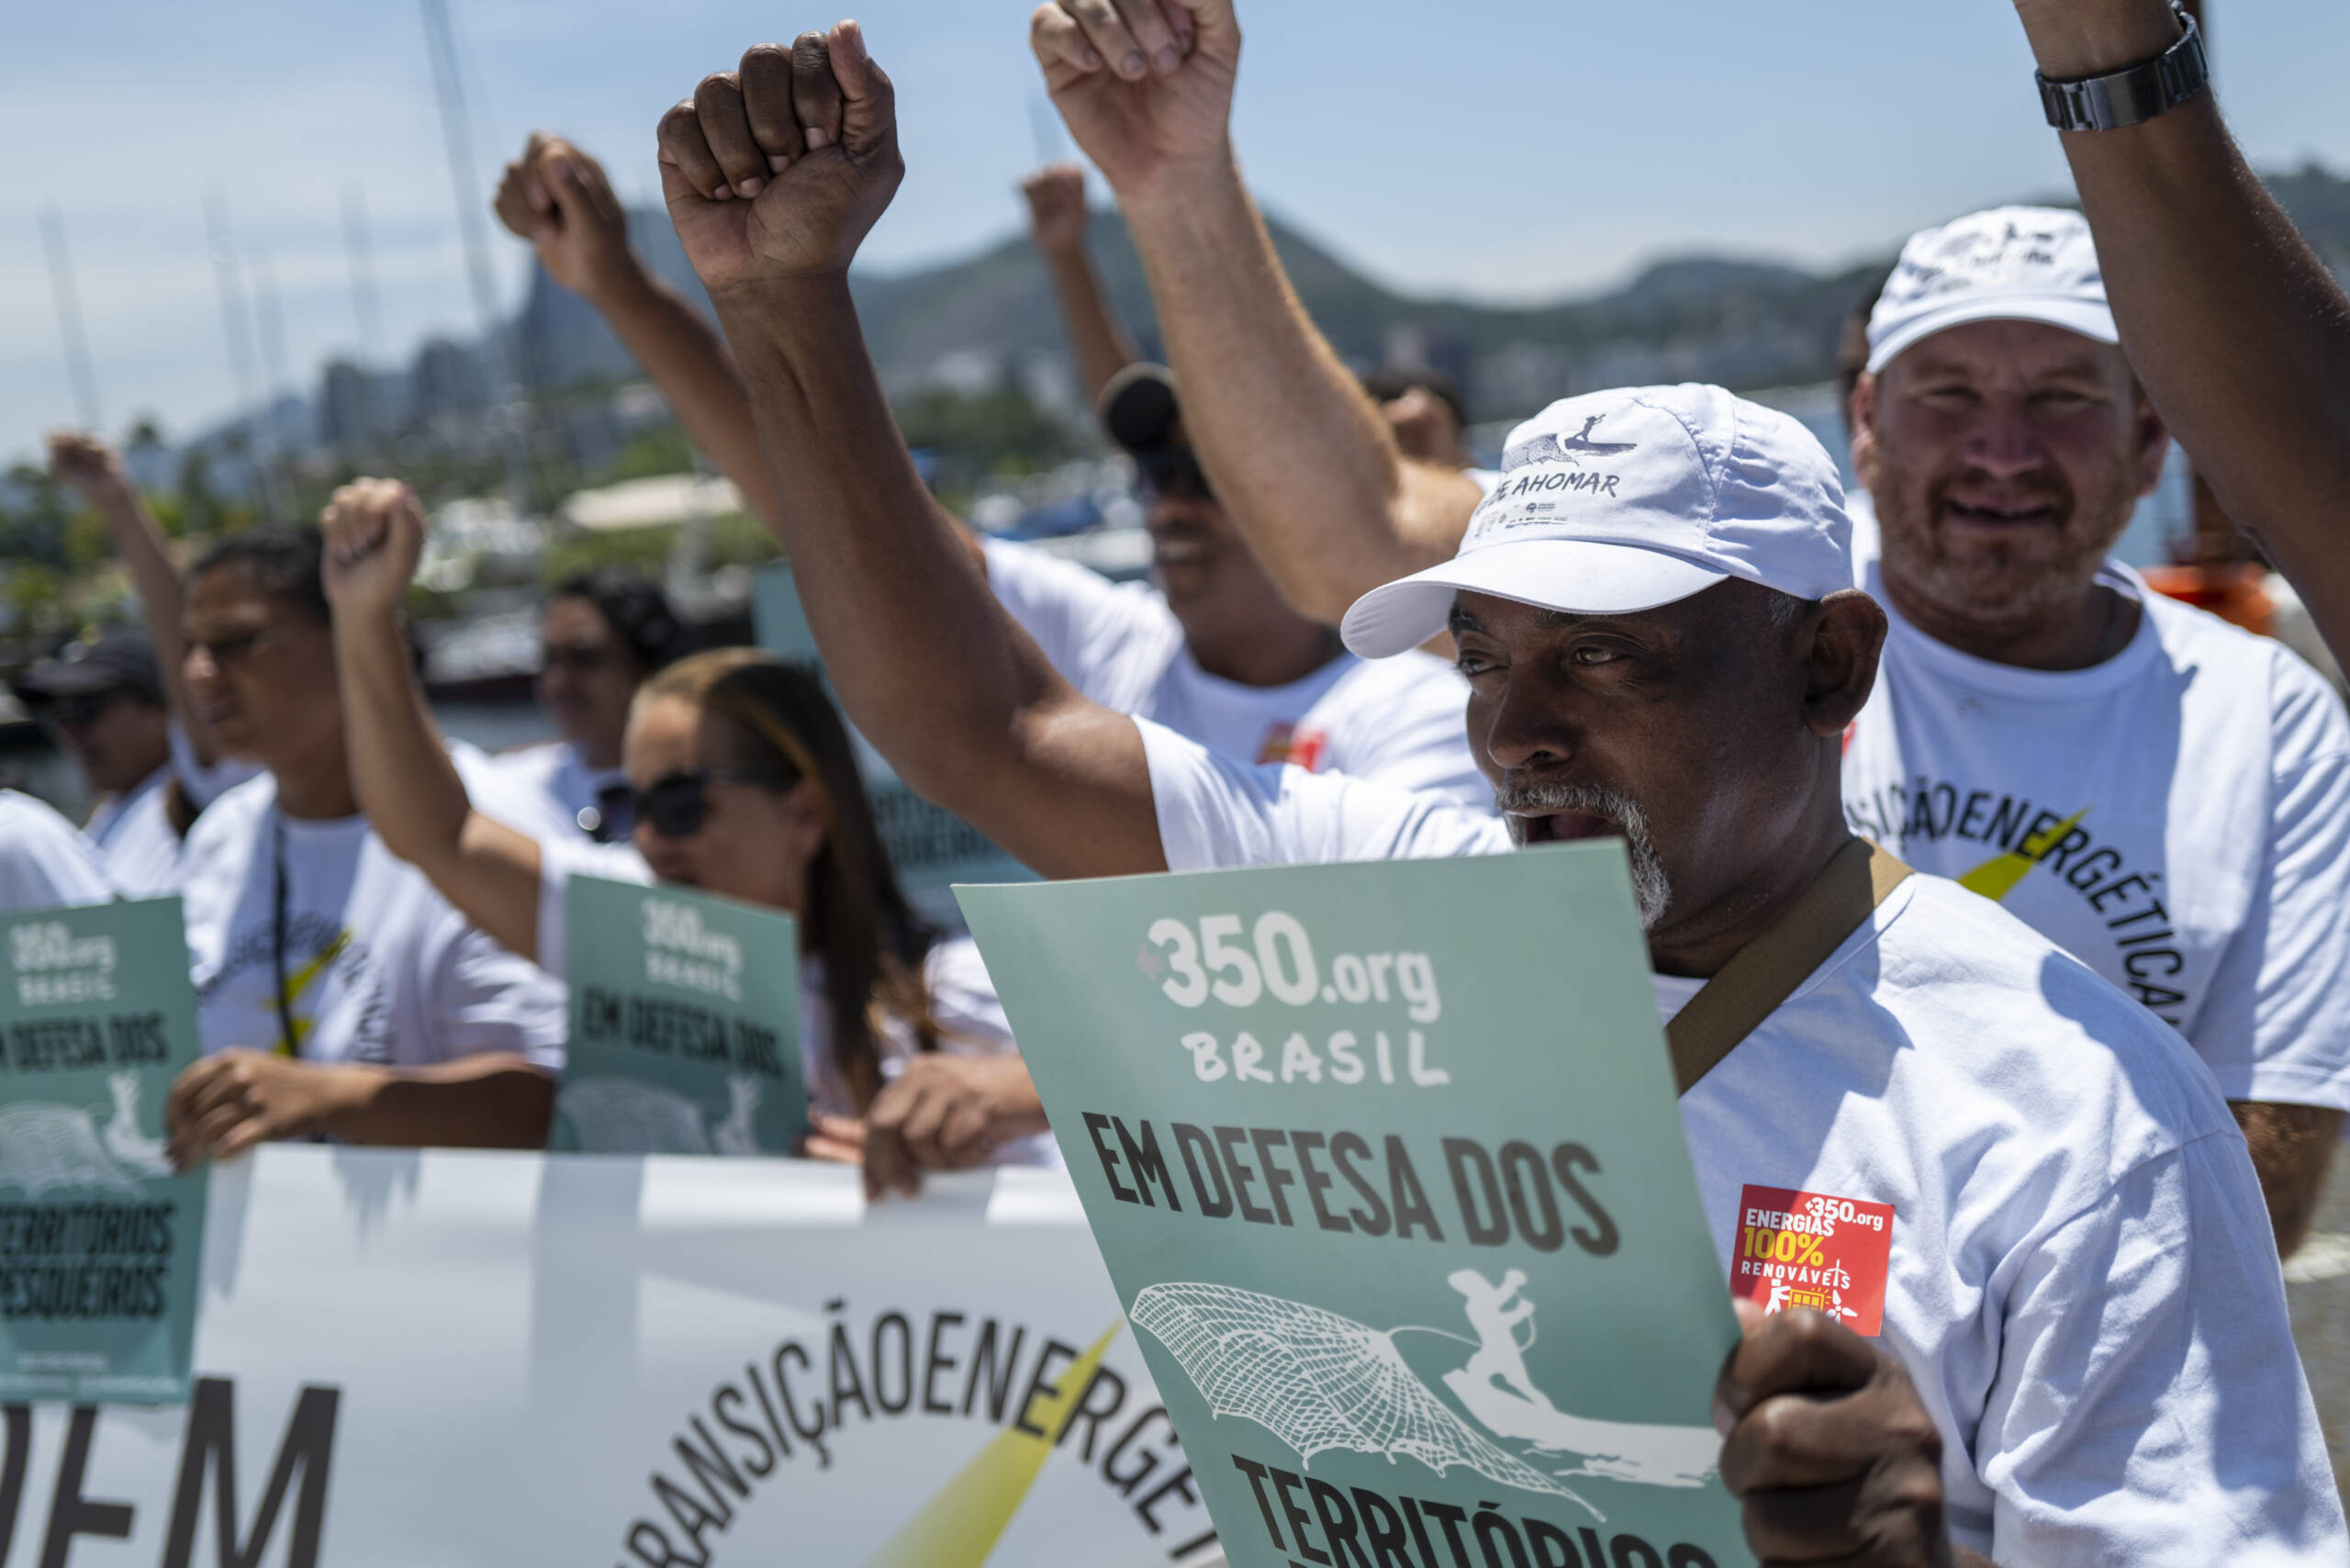 Brezilya, Rio de Janeiro, 3 Kasım: Guanabara Körfezi önünde protesto gösterisi düzenleyen geleneksel balıkçılar, Brezilya hükümetinden petrol ve doğal gazı sübvanse etmeyi bırakmasını ve yenilenebilir enerji kaynaklarına daha fazla yatırım yapmasını talep etti. Fotoğraf: Lucas Landau